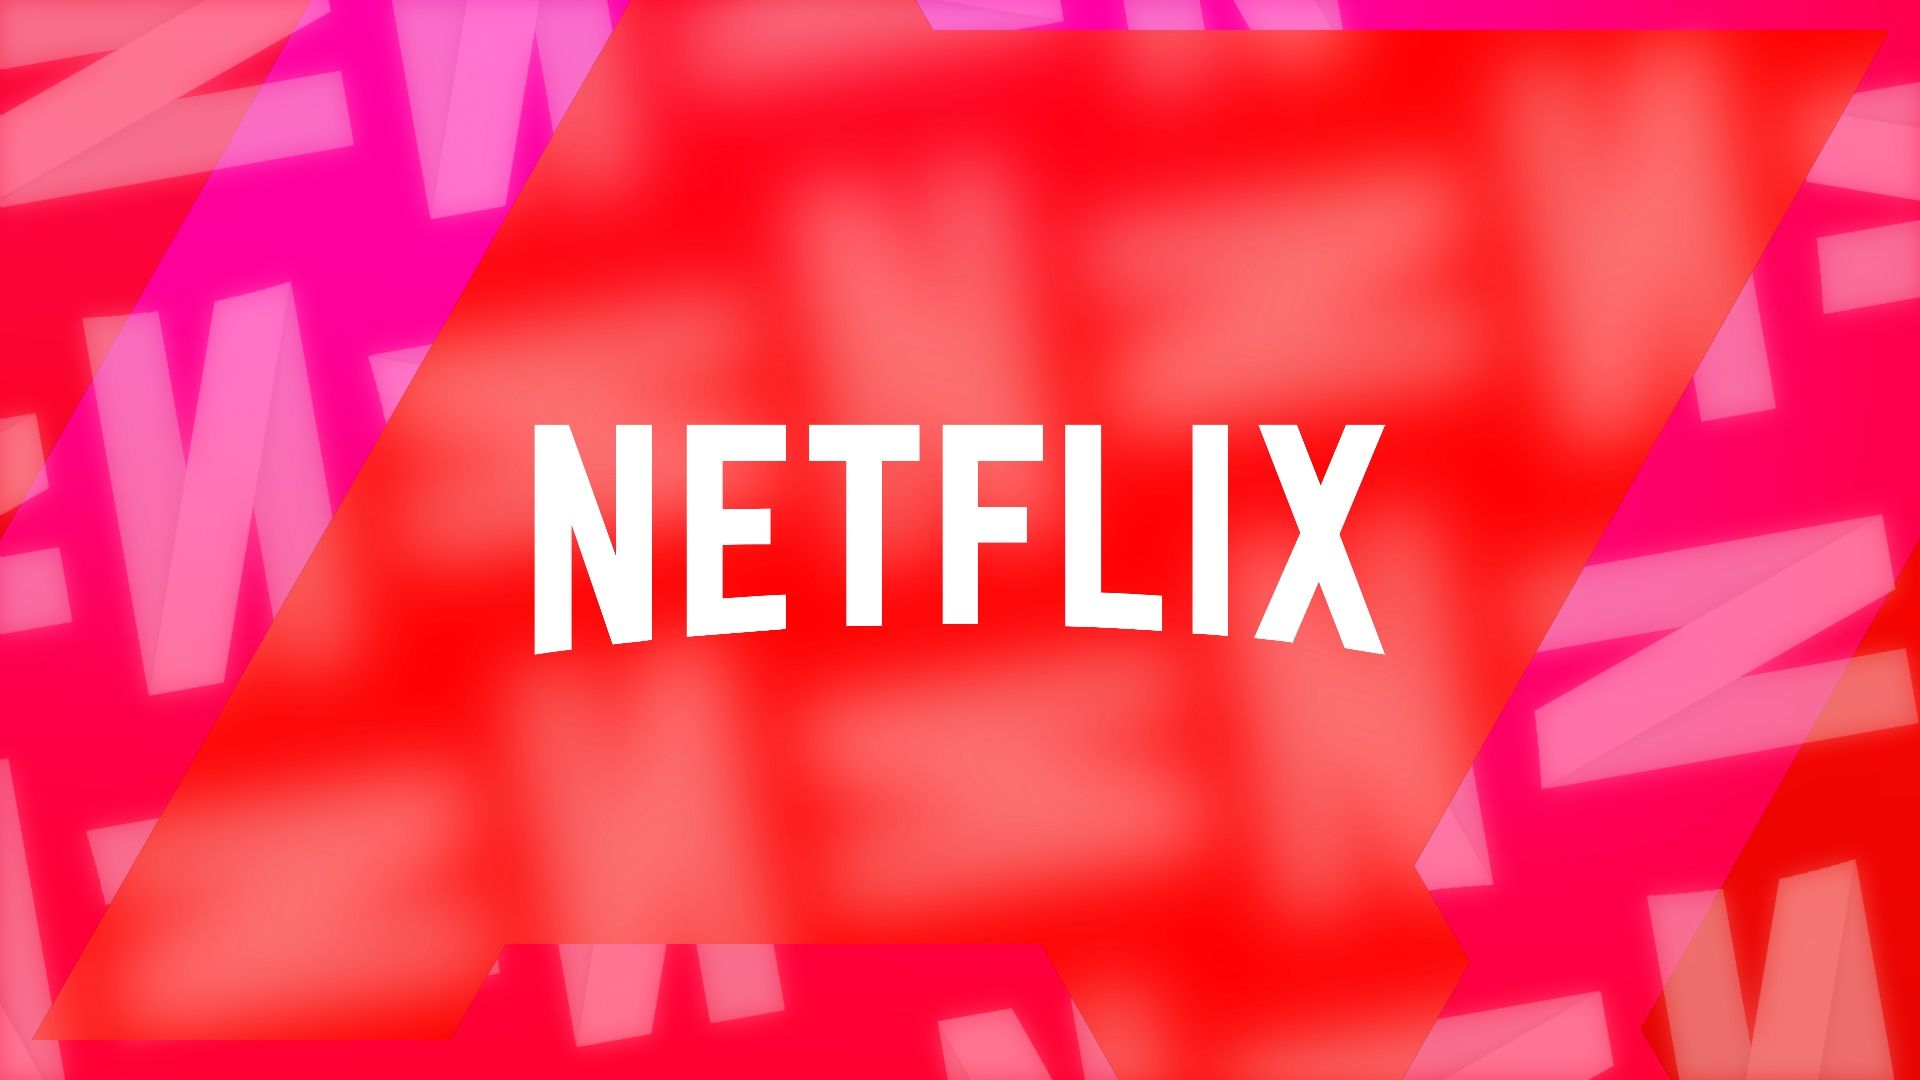 Logotipo da Netflix contra um fundo vermelho